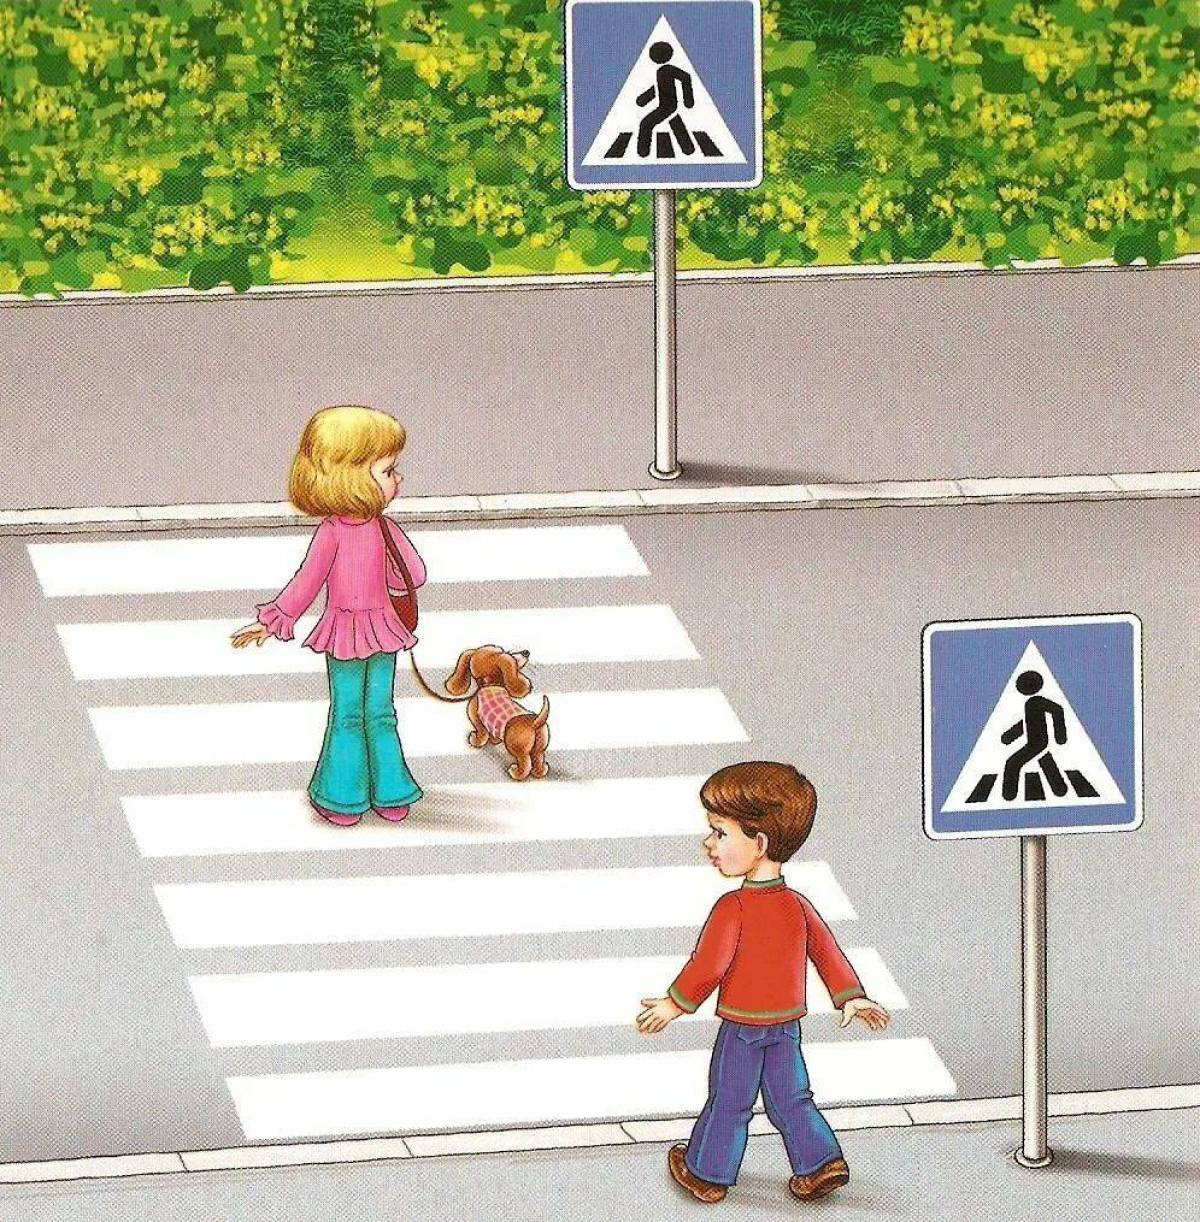 Переход дорого. Пешеходный переход для детей. Пешеходный переход картинка для детей. Дети пешеходы. Картина пешеходный переход для детей.